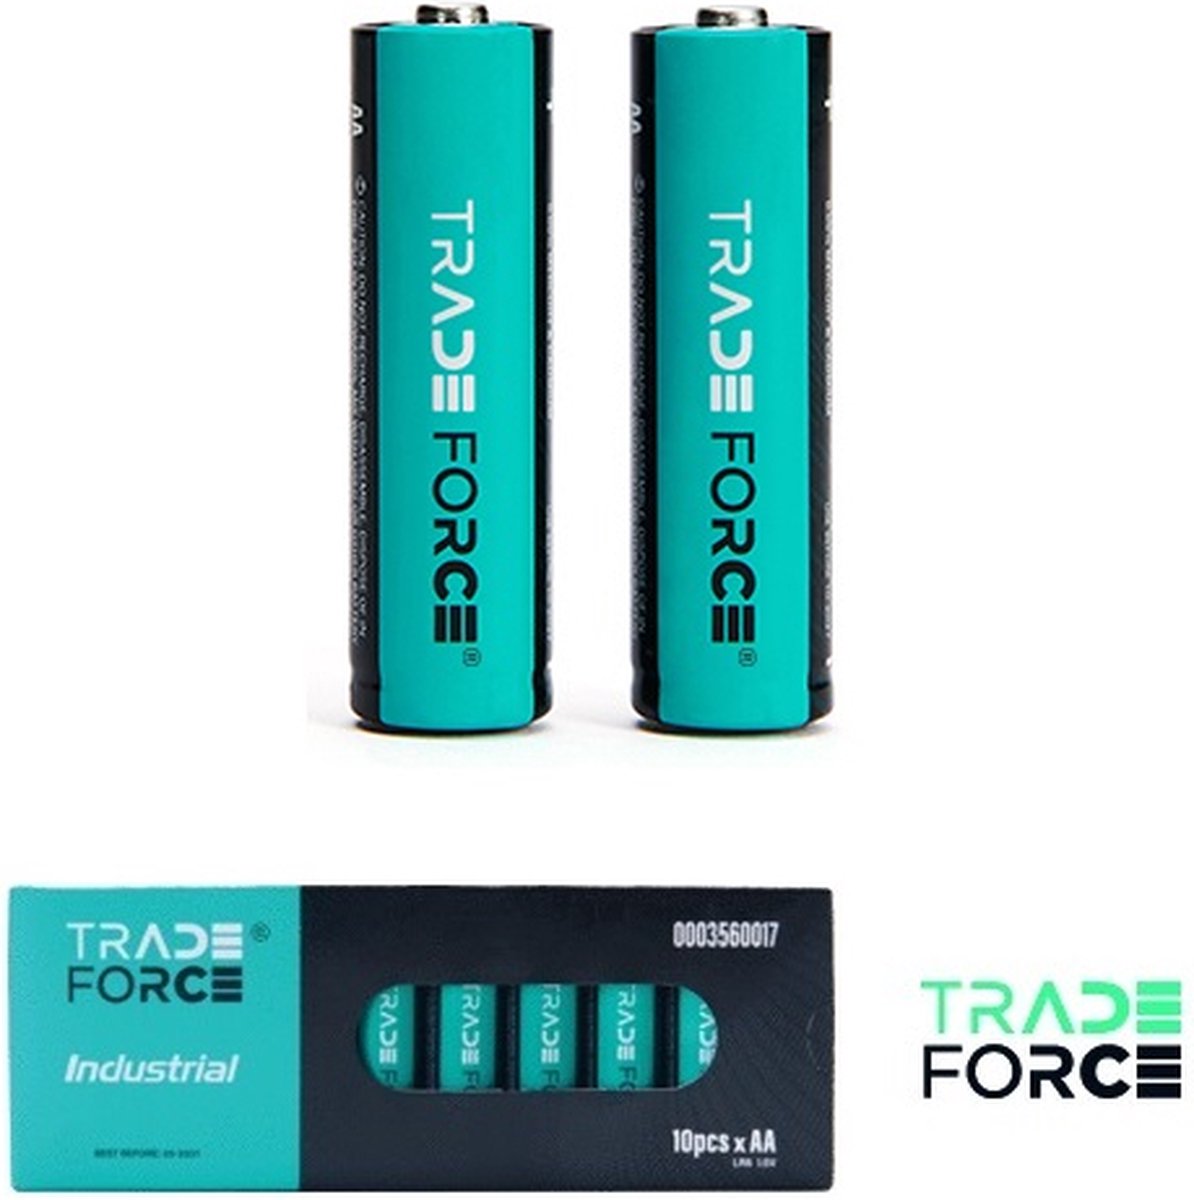 10 pack - Trade force - AA batterij - 1,5V - 2980mAh - Niet oplaadbaar